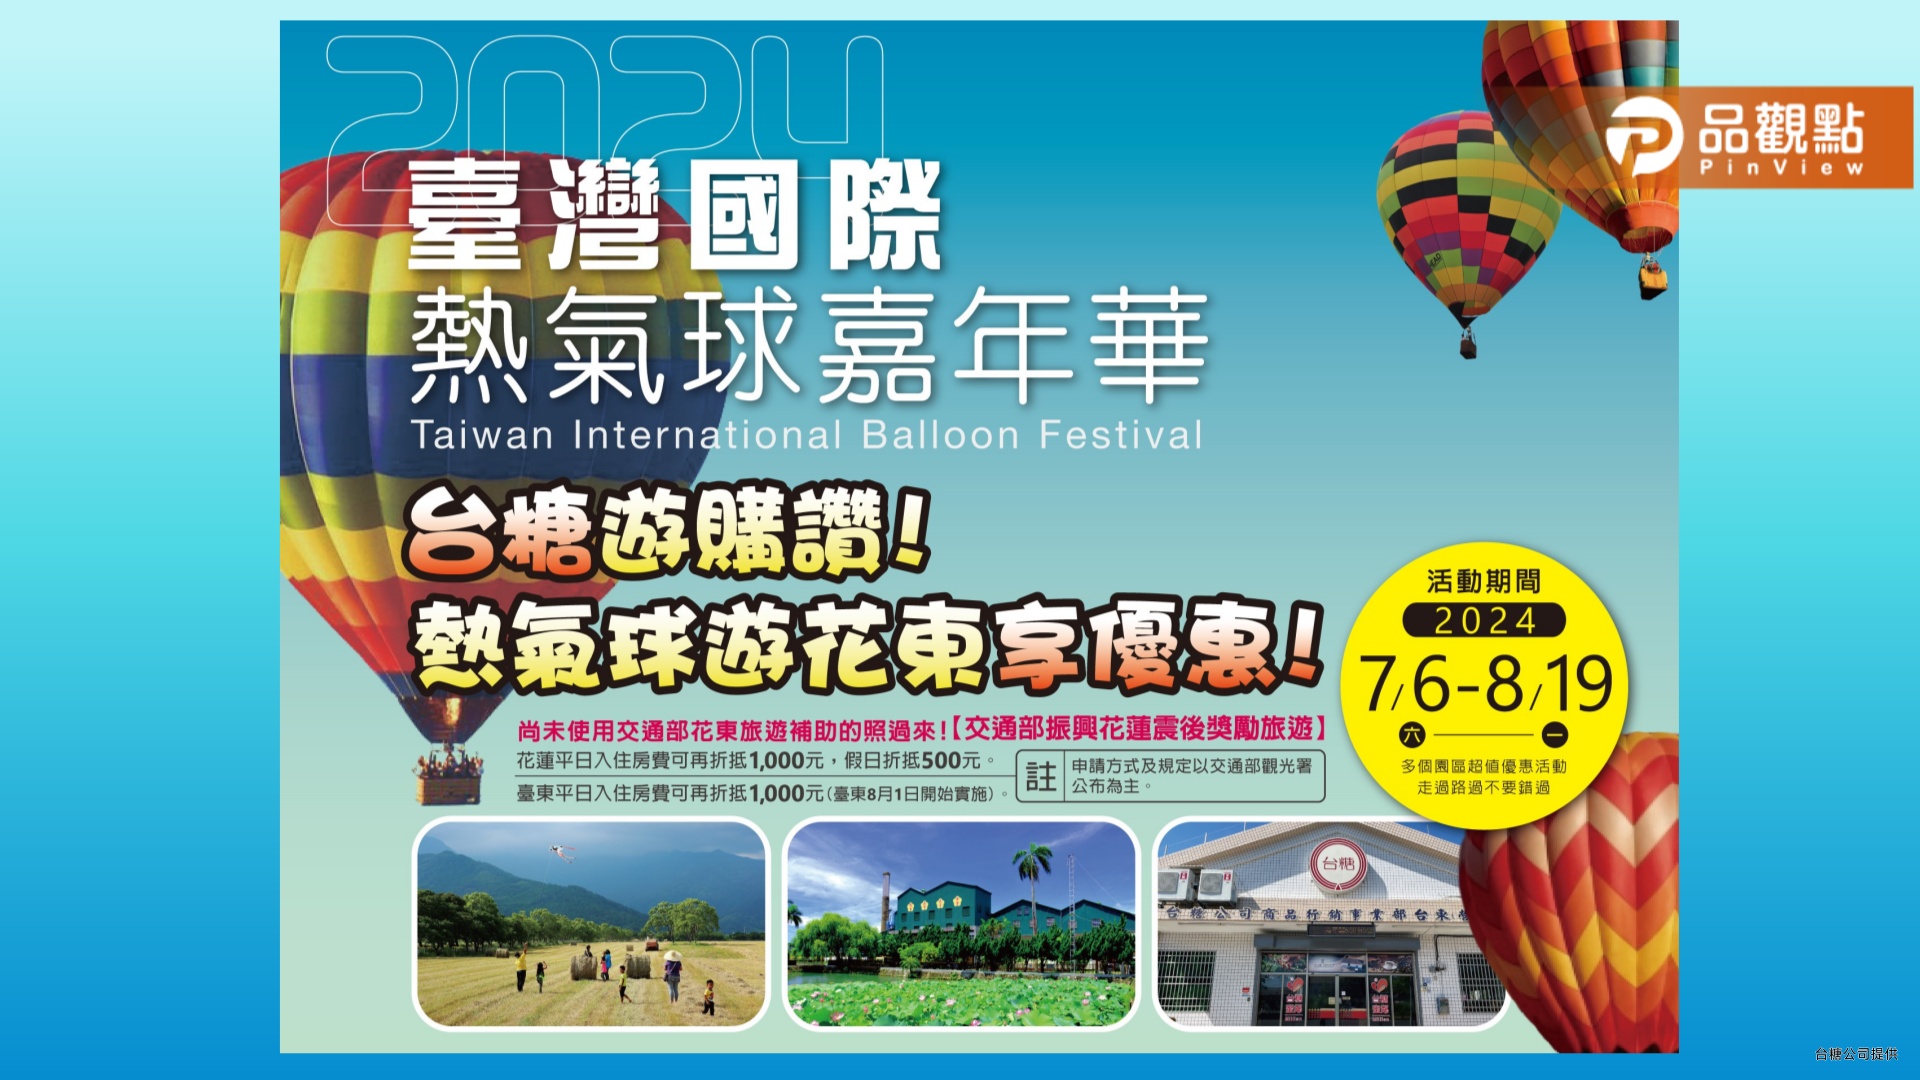 悠遊花東住台糖  熱氣球季最高6折限時優惠  人均最低只要750元